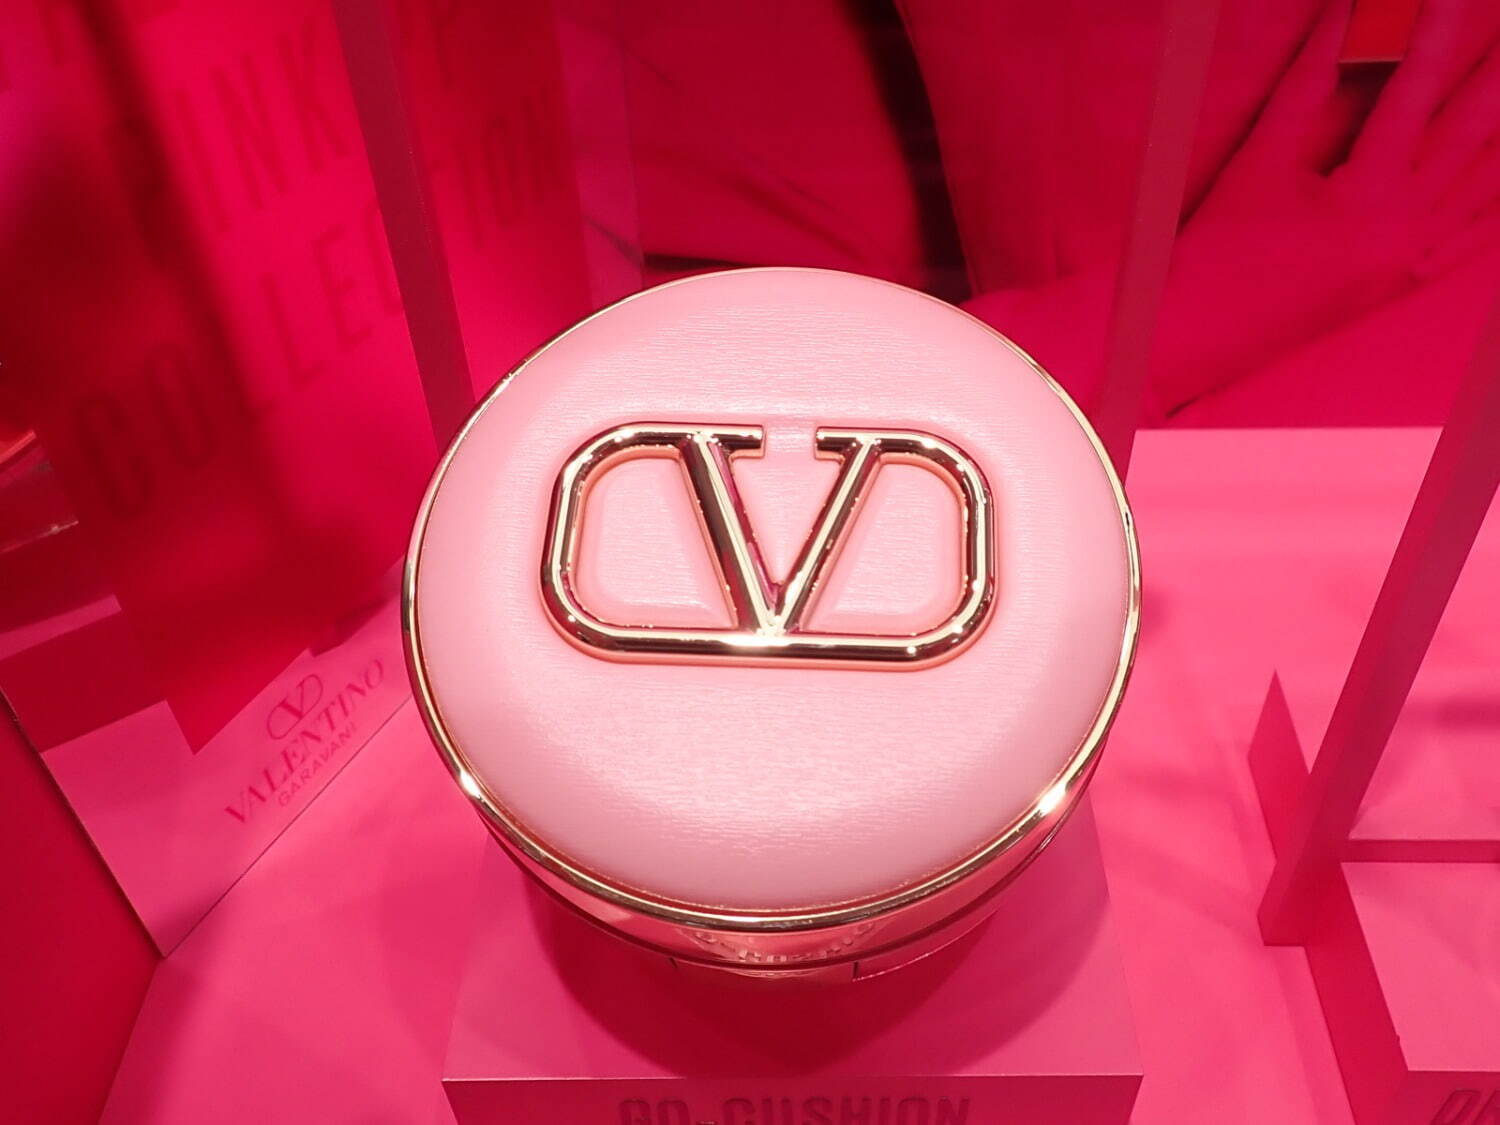 ヴァレンティノ ビューティ、人気クッションファンデが“ピンク”の限定